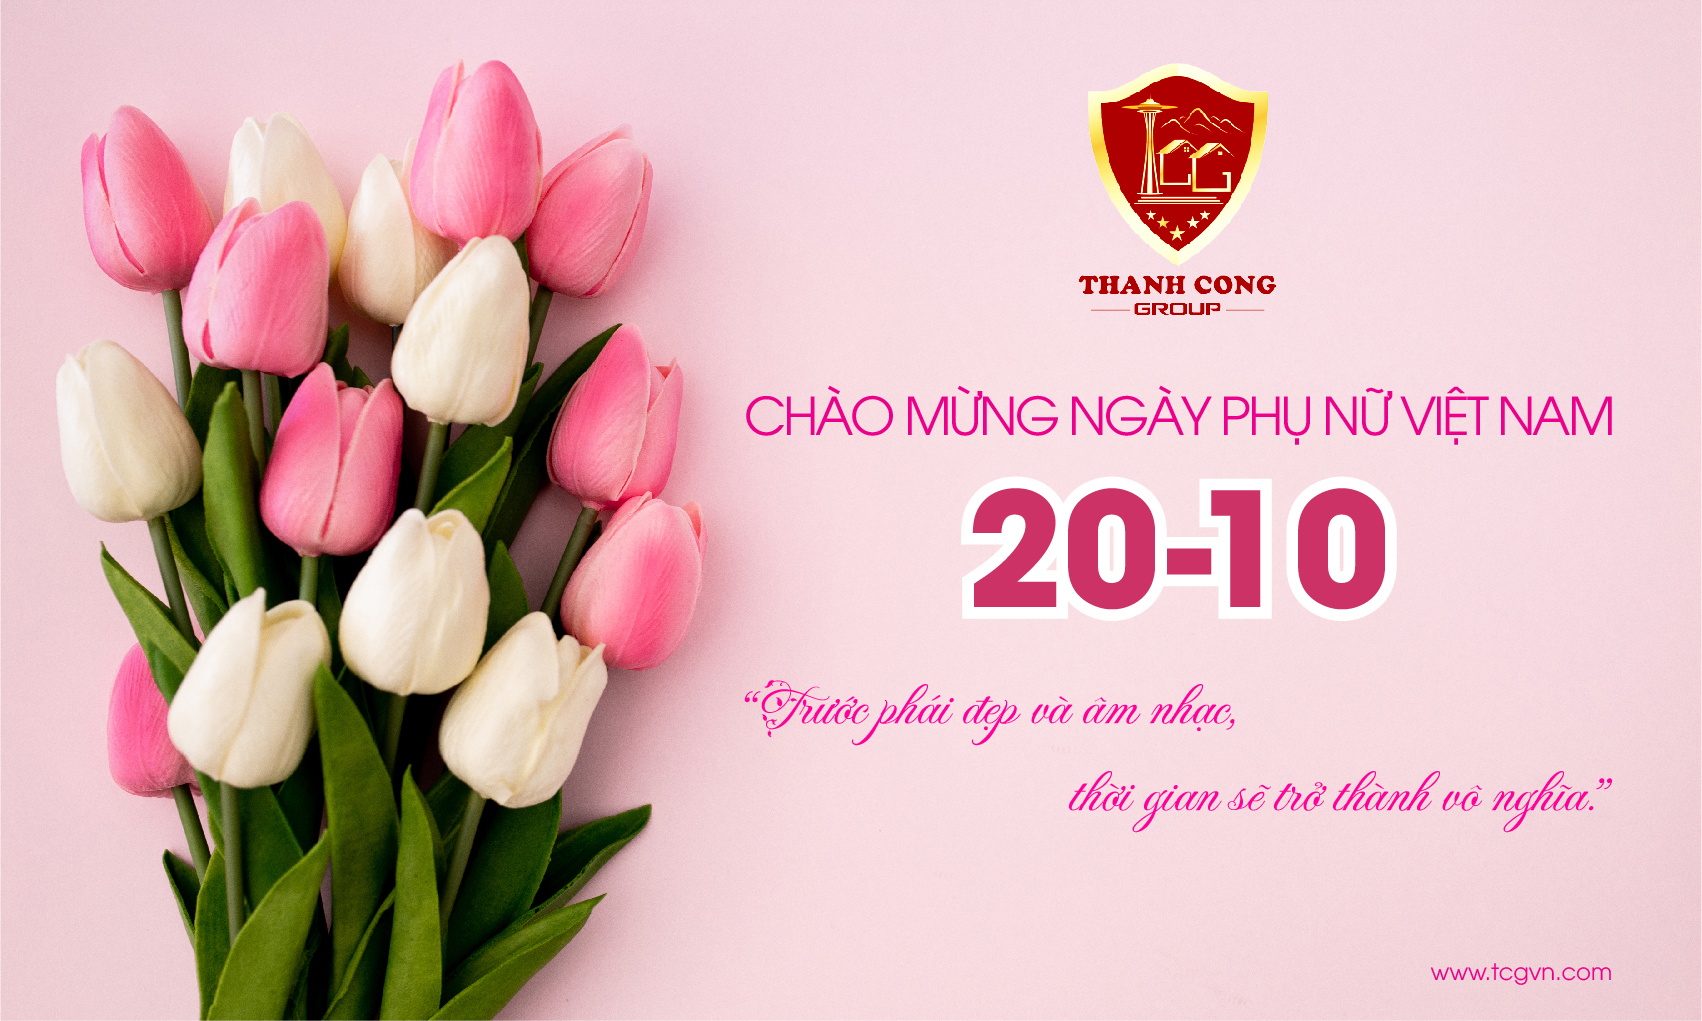 Thanh Cong Group chào mừng ngày phụ nữ Việt Nam 20-10